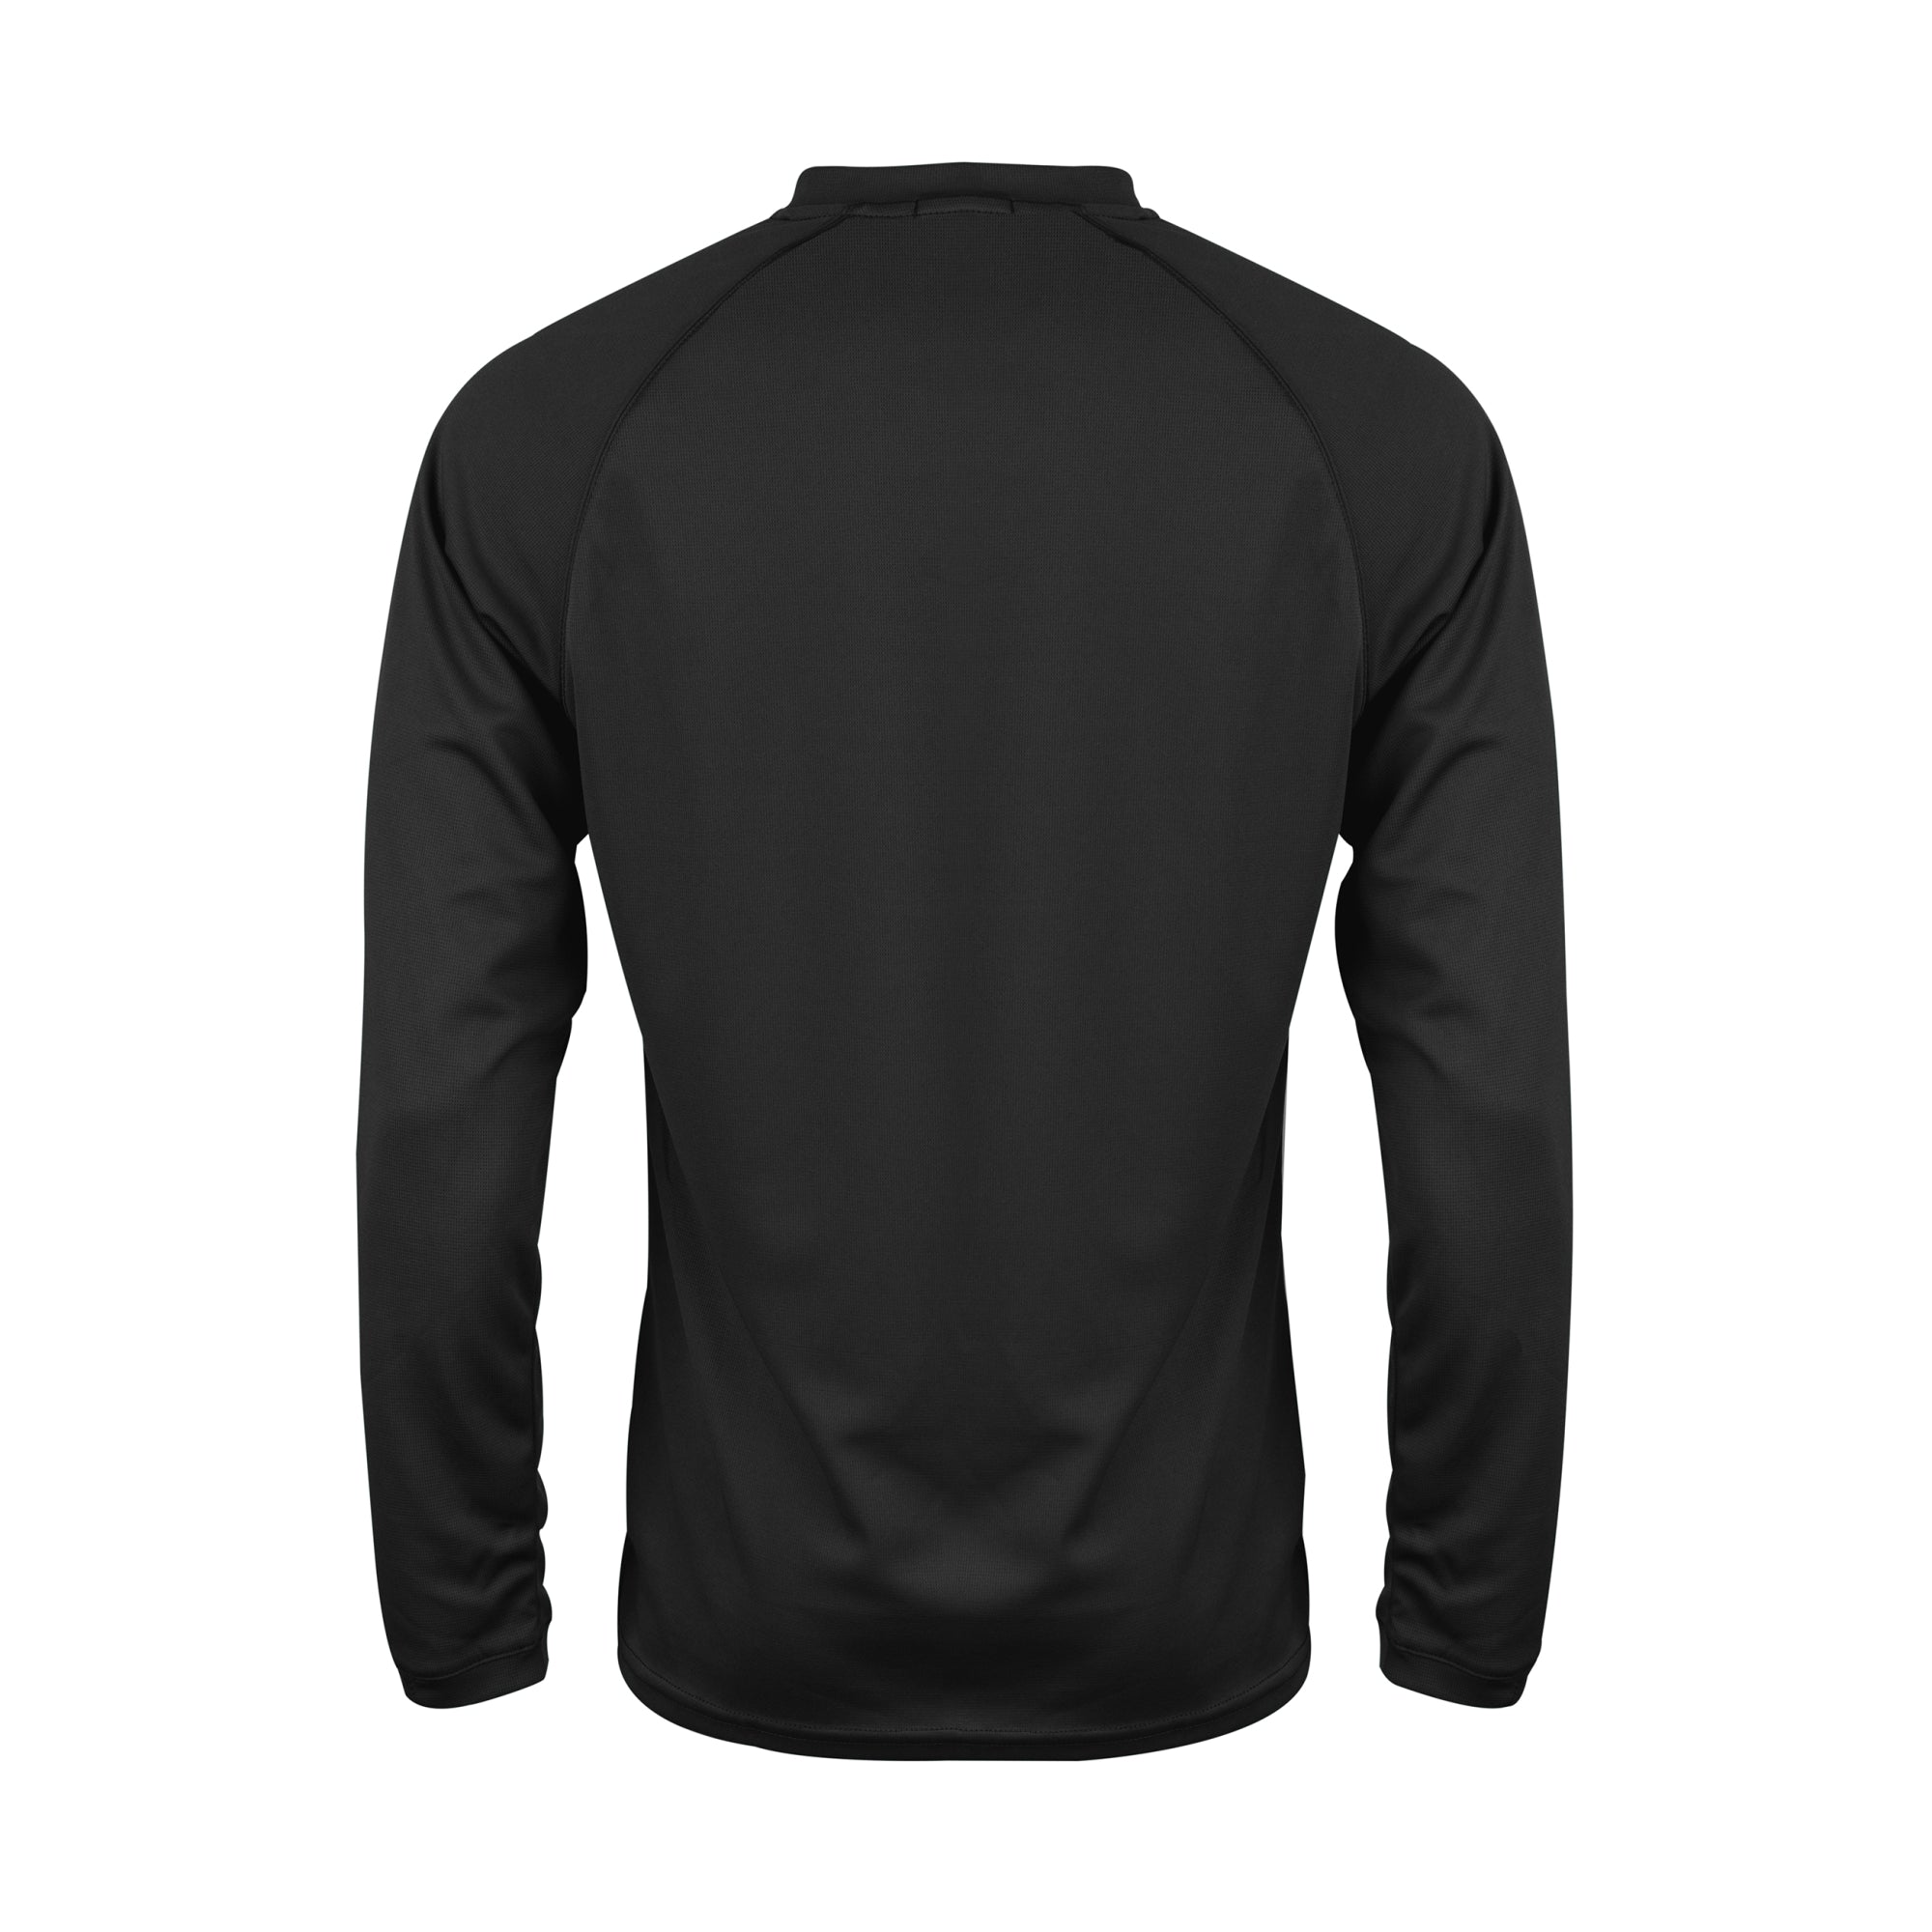 Gray Nicolls Matrix V2 LS Tee Shirt (Black) – Customkit.com